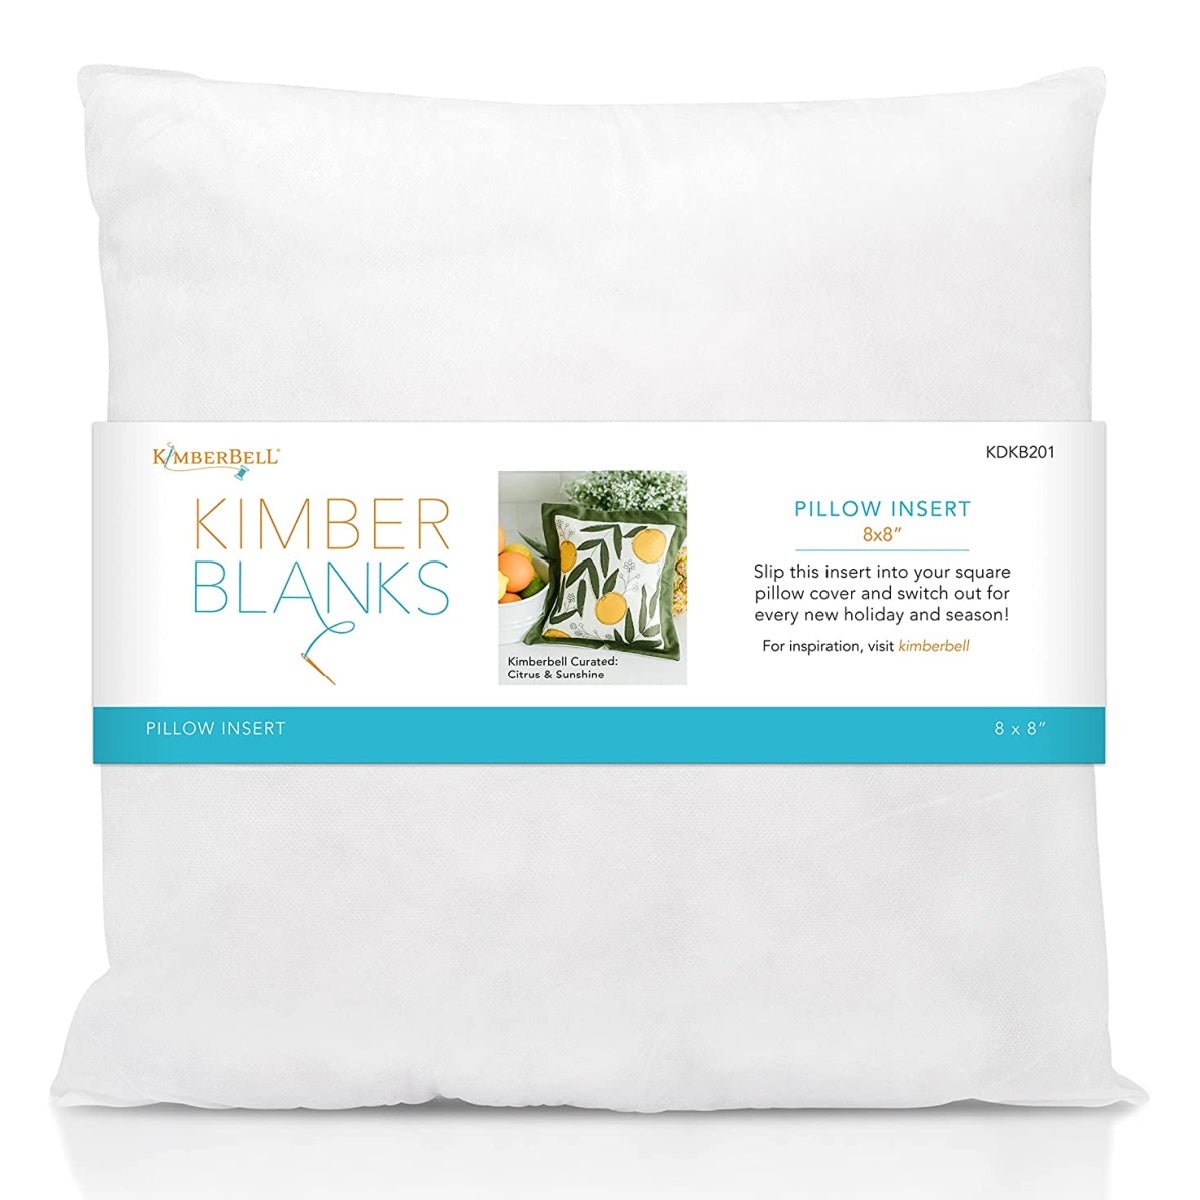 KimberBell Blanks 8x8 Pillow insert